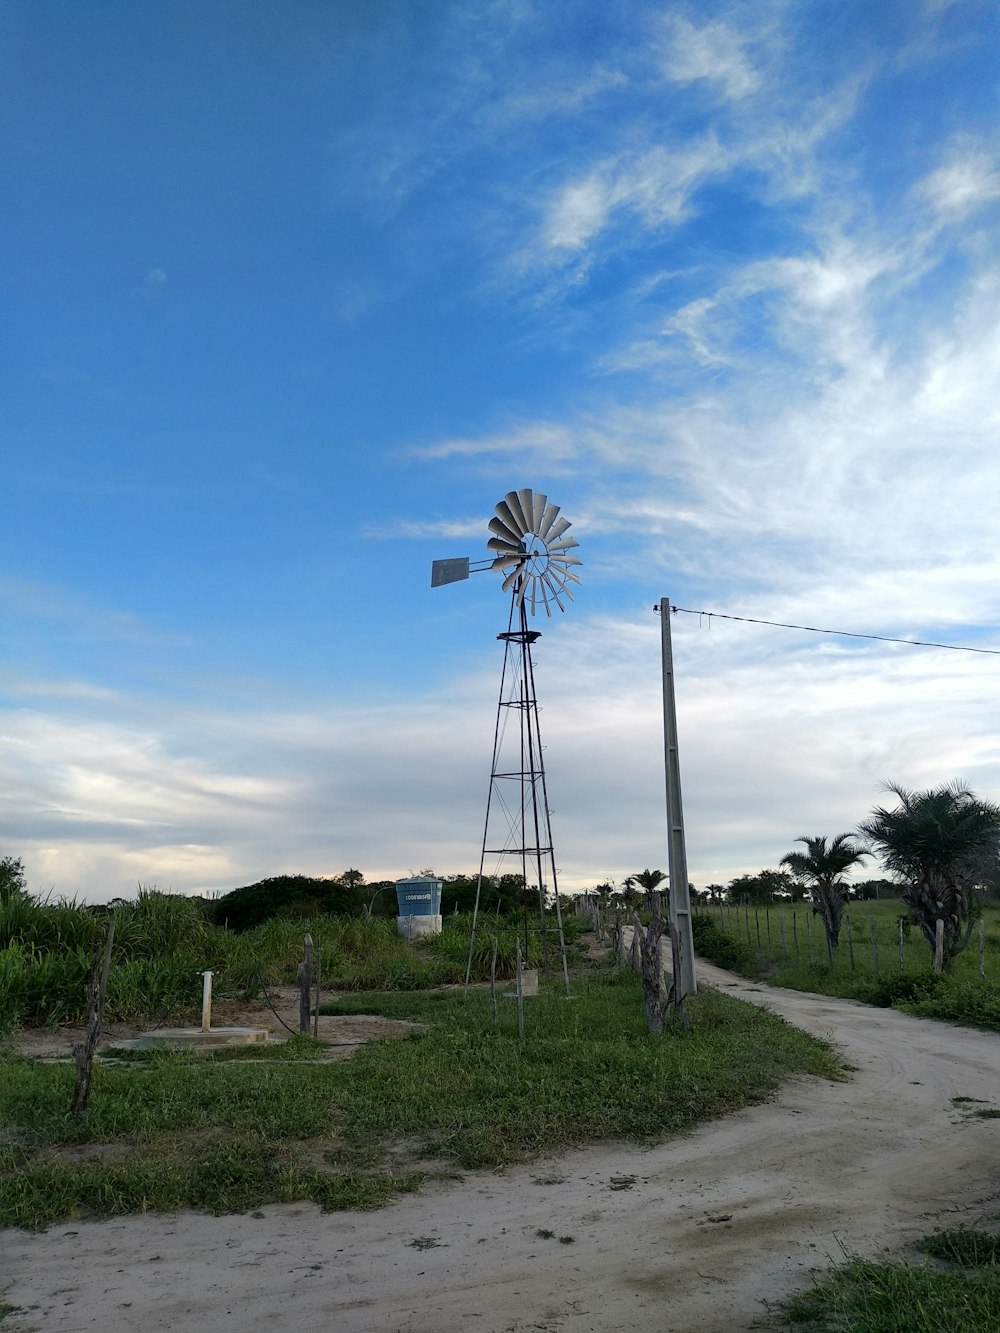 Eine Windmühle auf einer üppigen grünen Wiese